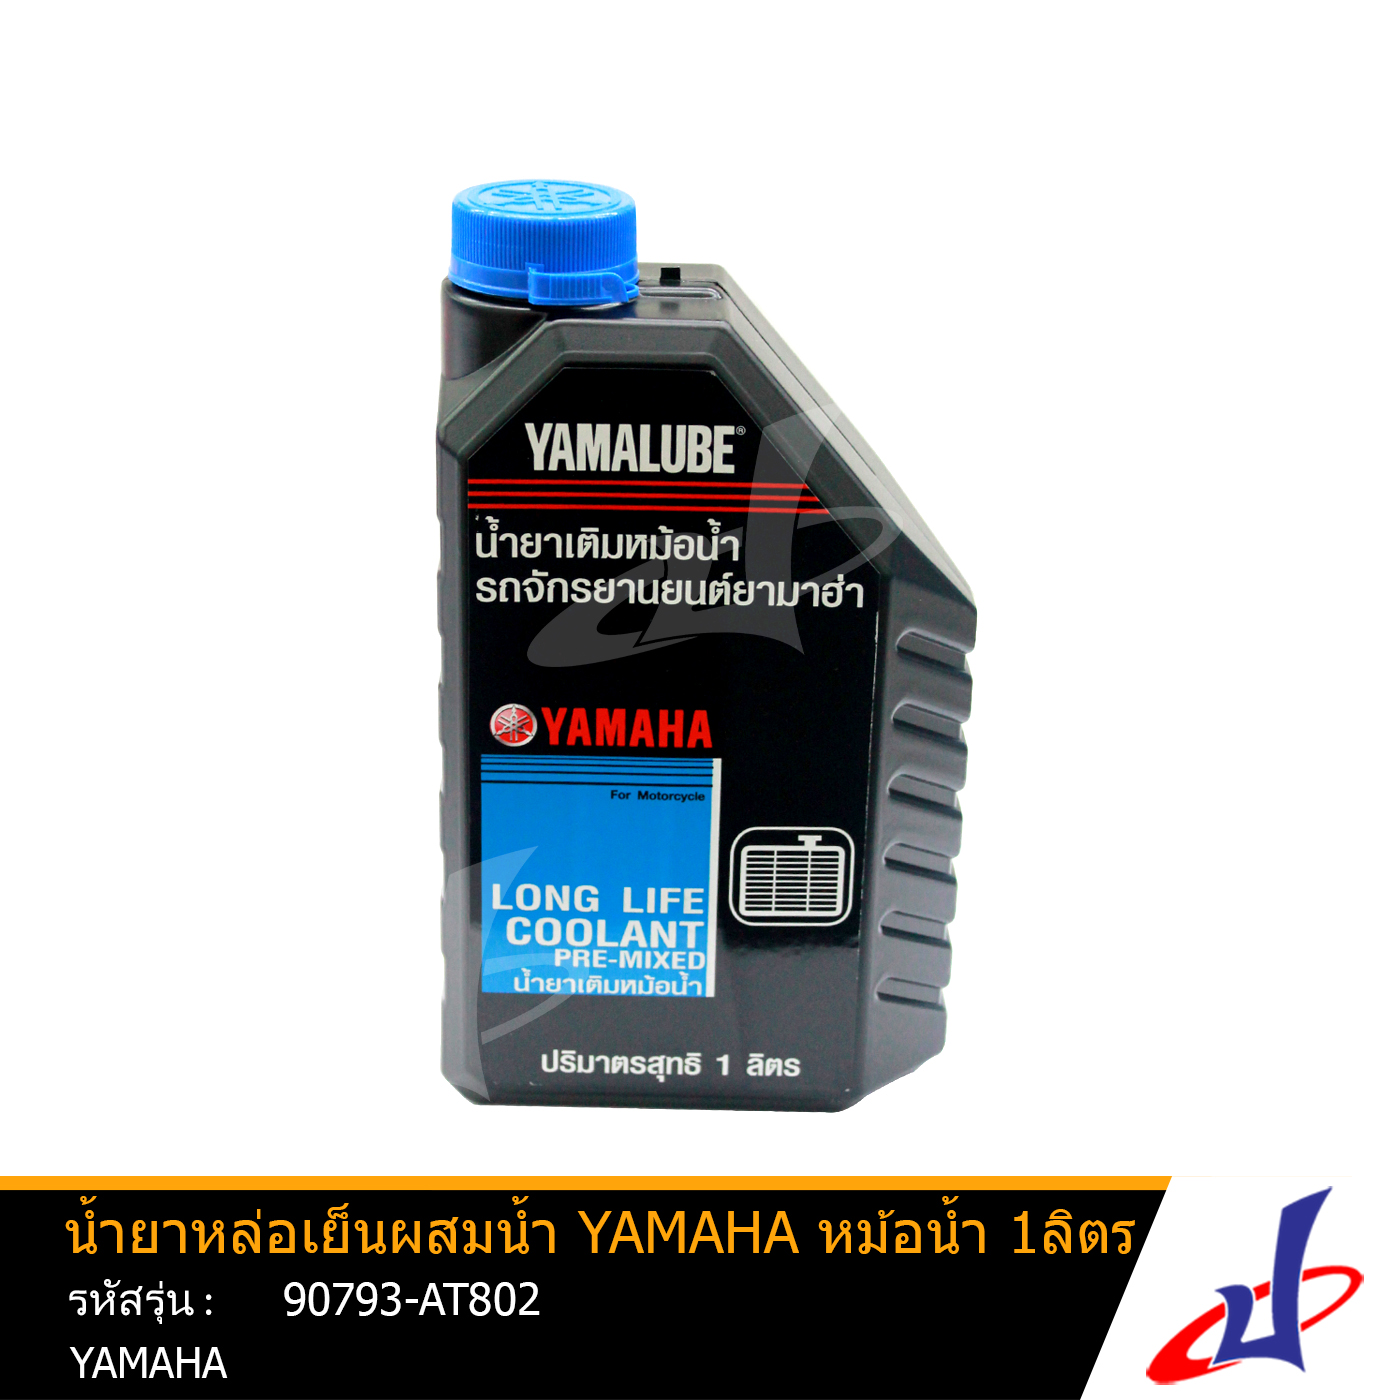 น้ำยาหล่อเย็นผสมน้ำ ยามาฮ่า หม้อน้ำ ขนาด 1 ลิตร  สินค้าแท้จากศูนย์ YAMAHA   (90793-AT802)